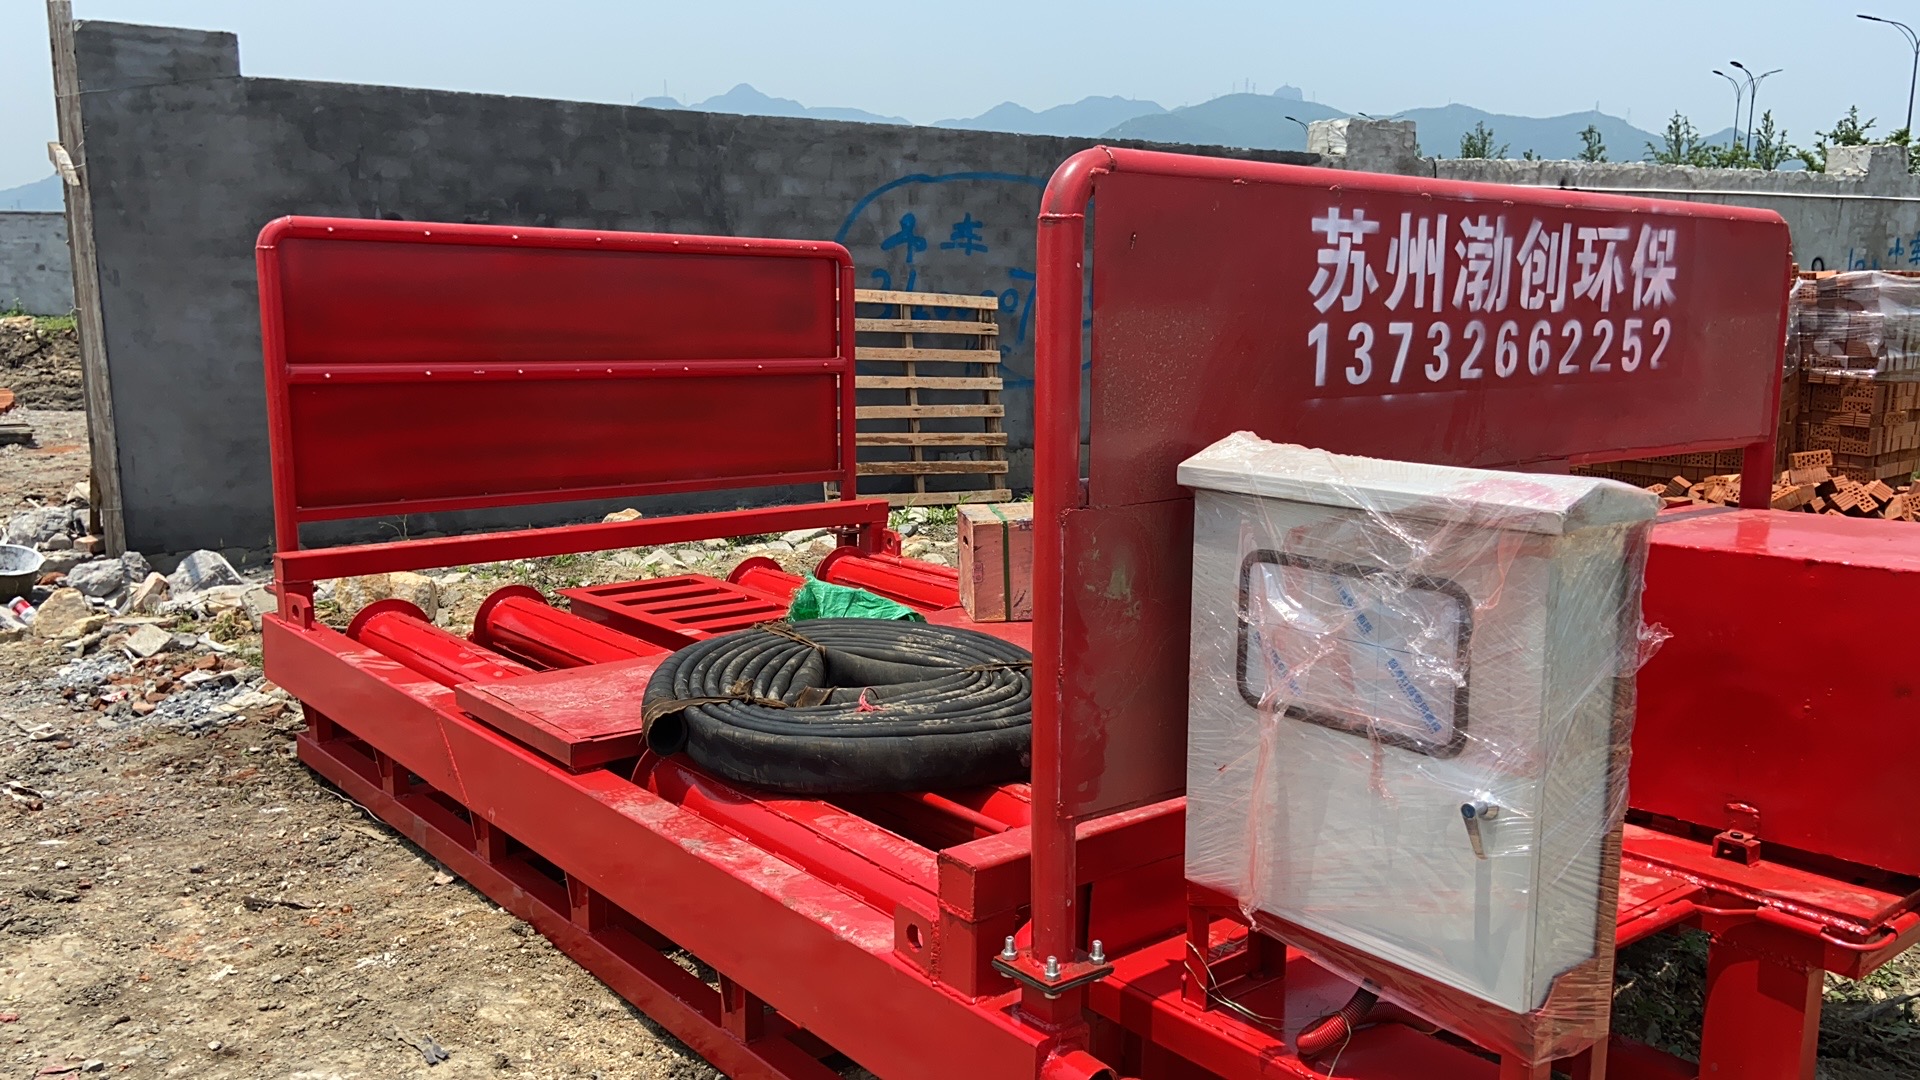 上海滚轴洗车台品牌厂家,建筑工地洗车槽终生质保